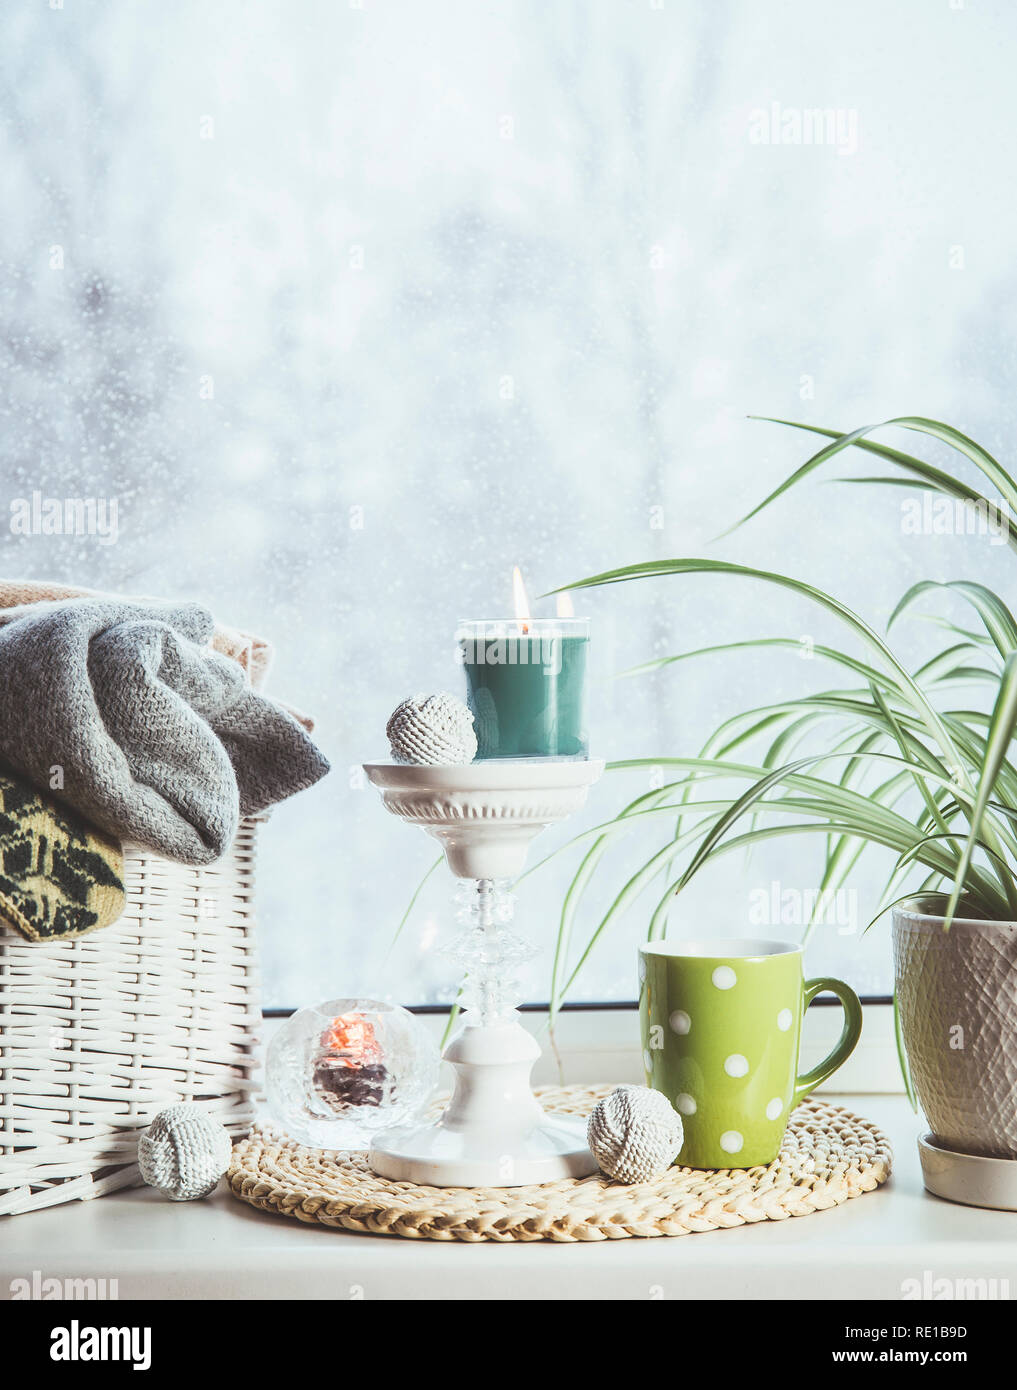 Gemütlich im Winter auf der Fensterbank. Im romantischen Stil tall Kerzenhalter, Rattan Korb mit gestrickten Handschuhe und warme Plaids und Decken, Schneefall outdoo Stockfoto